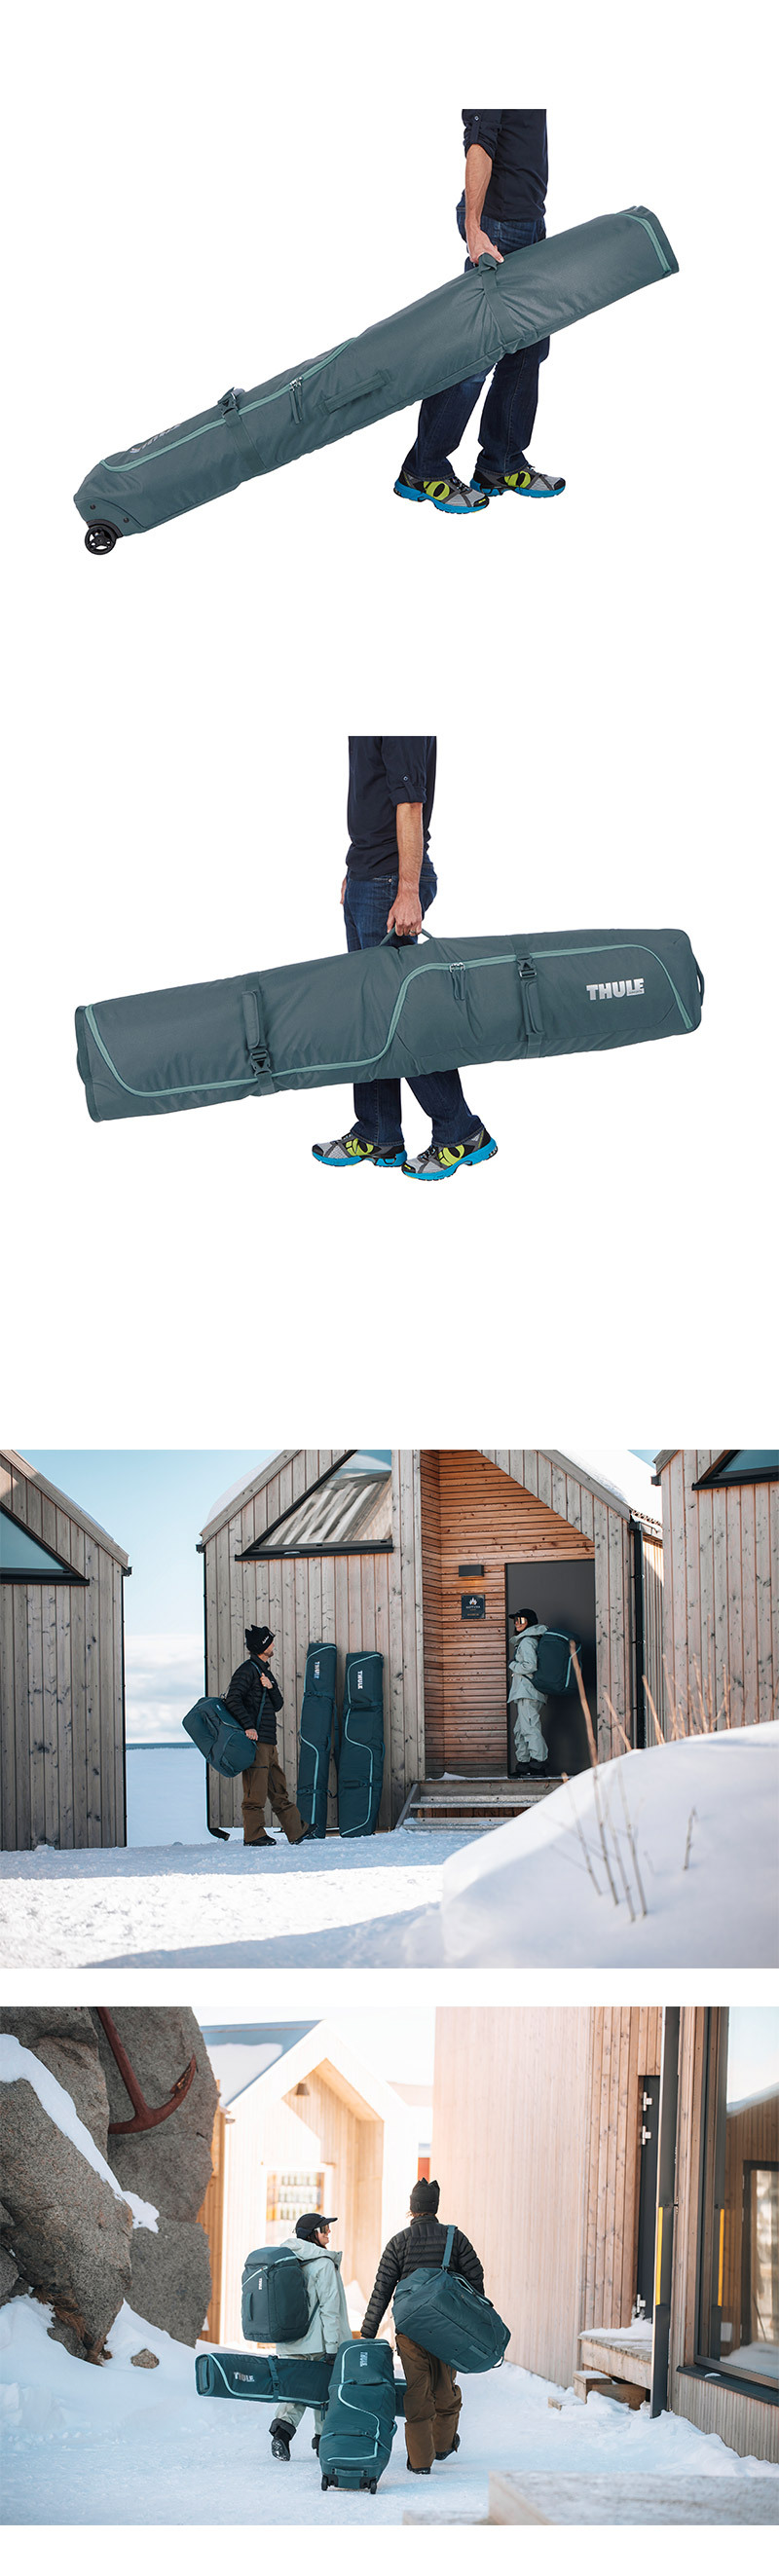 RoundTrip-Ski-Roller-175cm-004.jpg